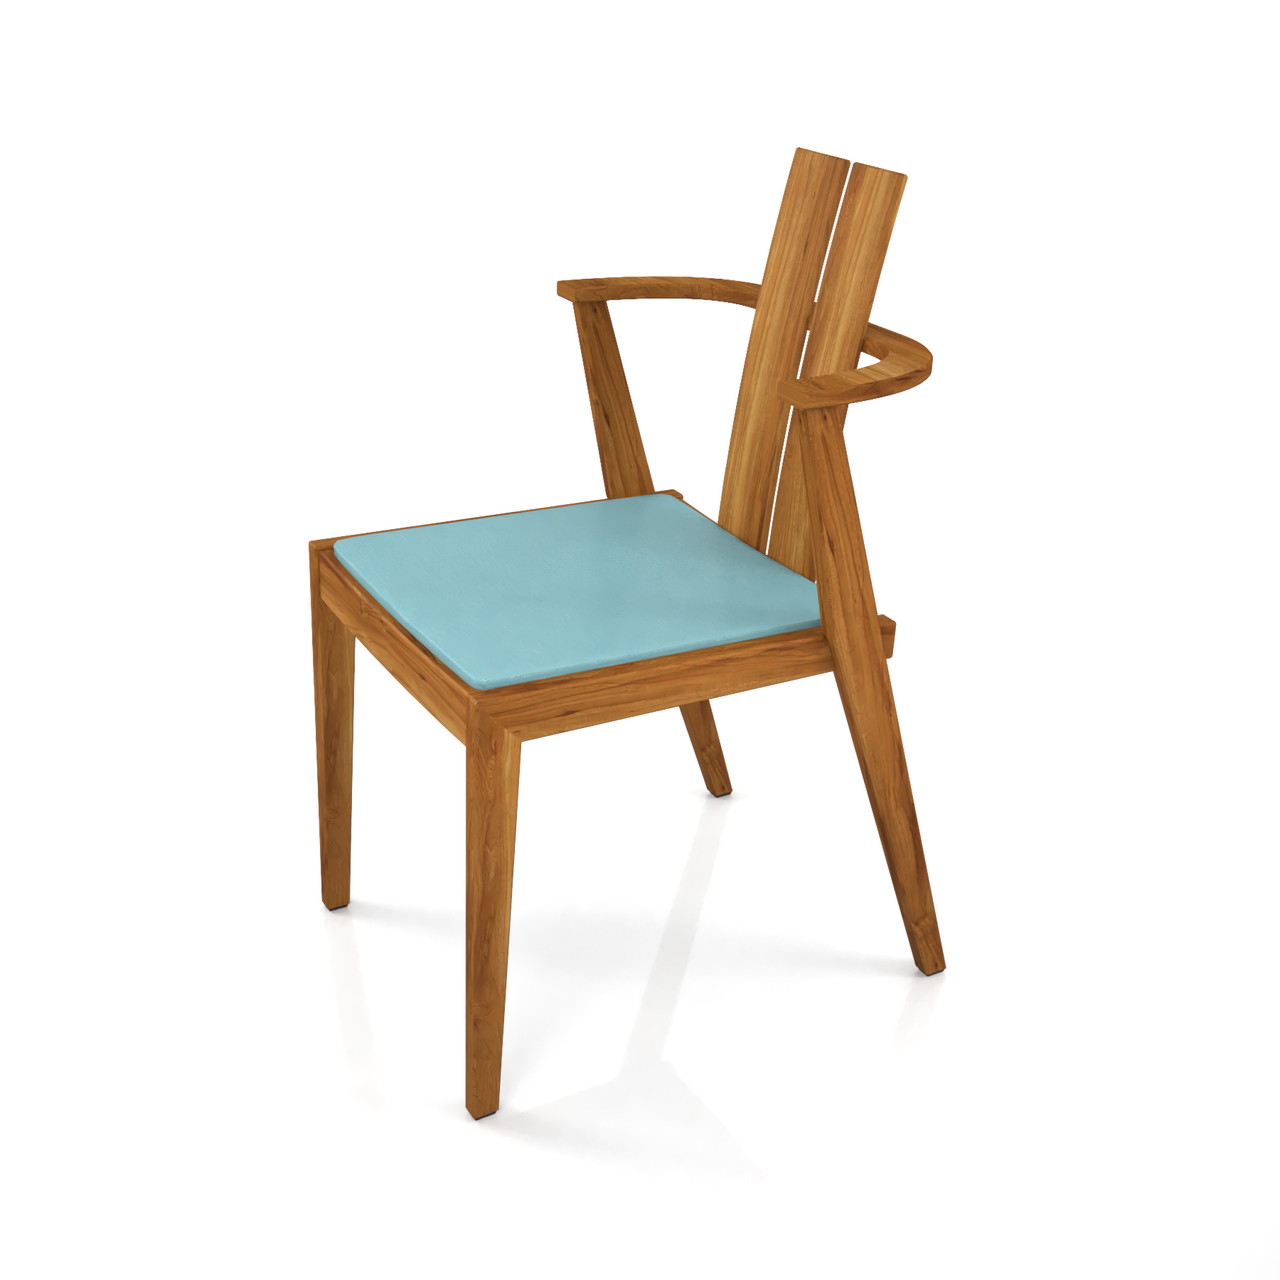 茶色い 木製のダイニングチェアの3DCADデータ丨インテリア 家具 椅子丨無料 商用可能 フリー素材 フリーデータ丨データ形式はformZ ・3ds・objファイルです